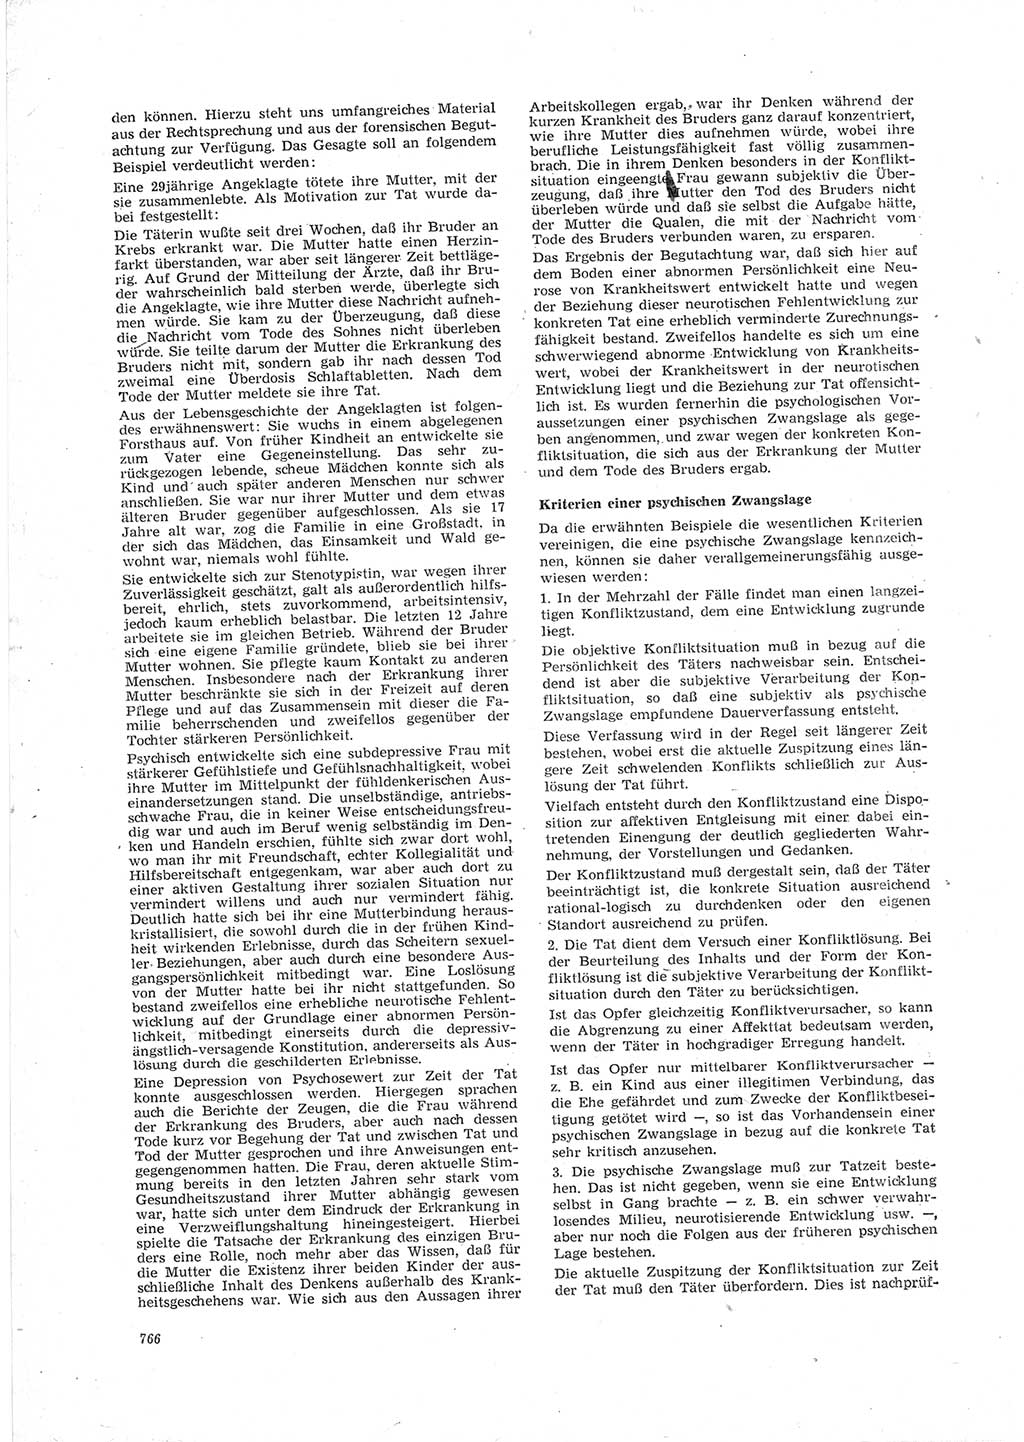 Neue Justiz (NJ), Zeitschrift für Recht und Rechtswissenschaft [Deutsche Demokratische Republik (DDR)], 23. Jahrgang 1969, Seite 766 (NJ DDR 1969, S. 766)